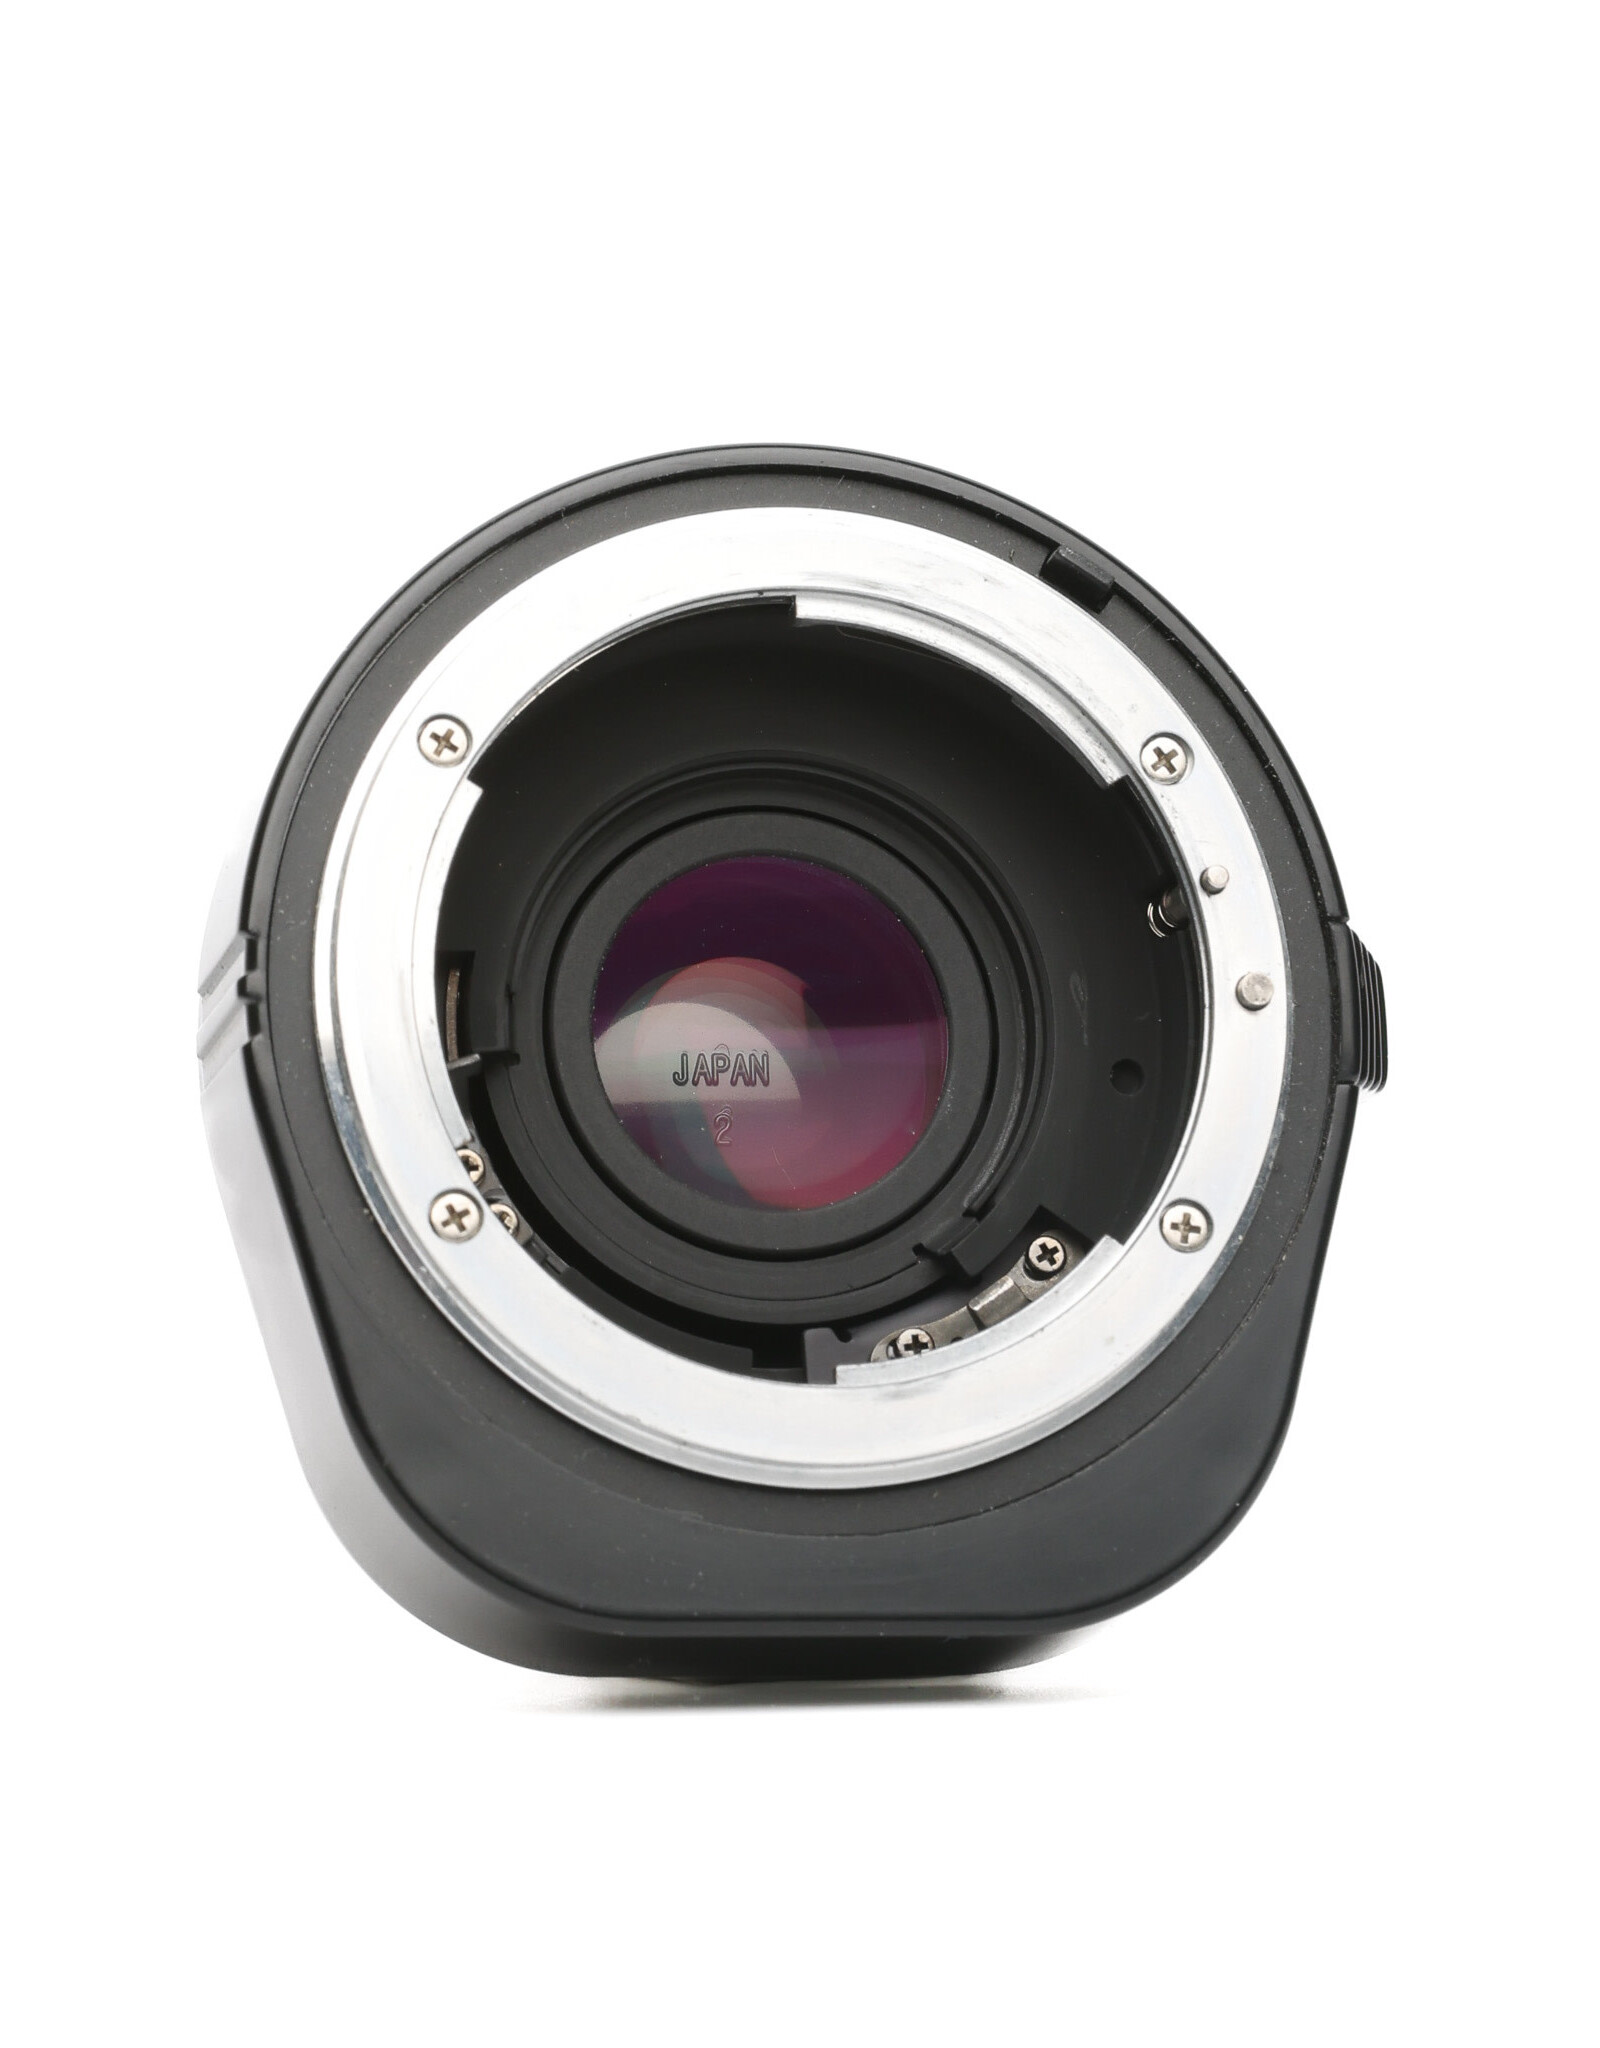 Nikon Nikon TC-200 2x Teleconverter for AI Lenses